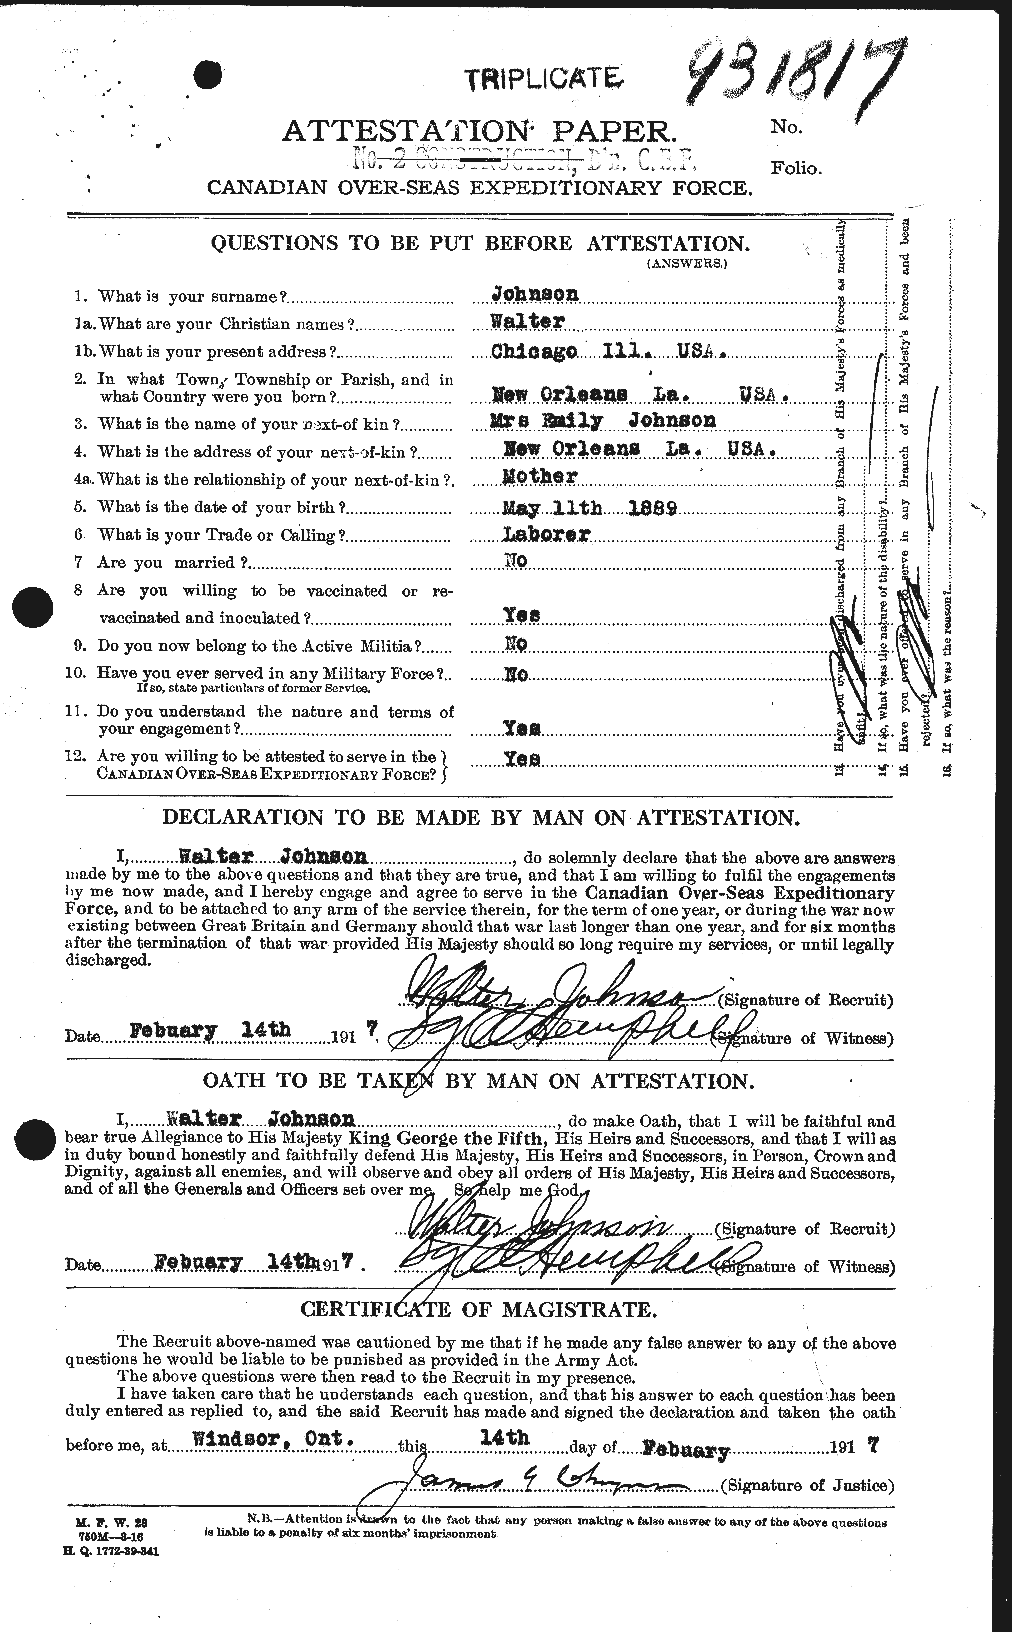 Dossiers du Personnel de la Première Guerre mondiale - CEC 417581a